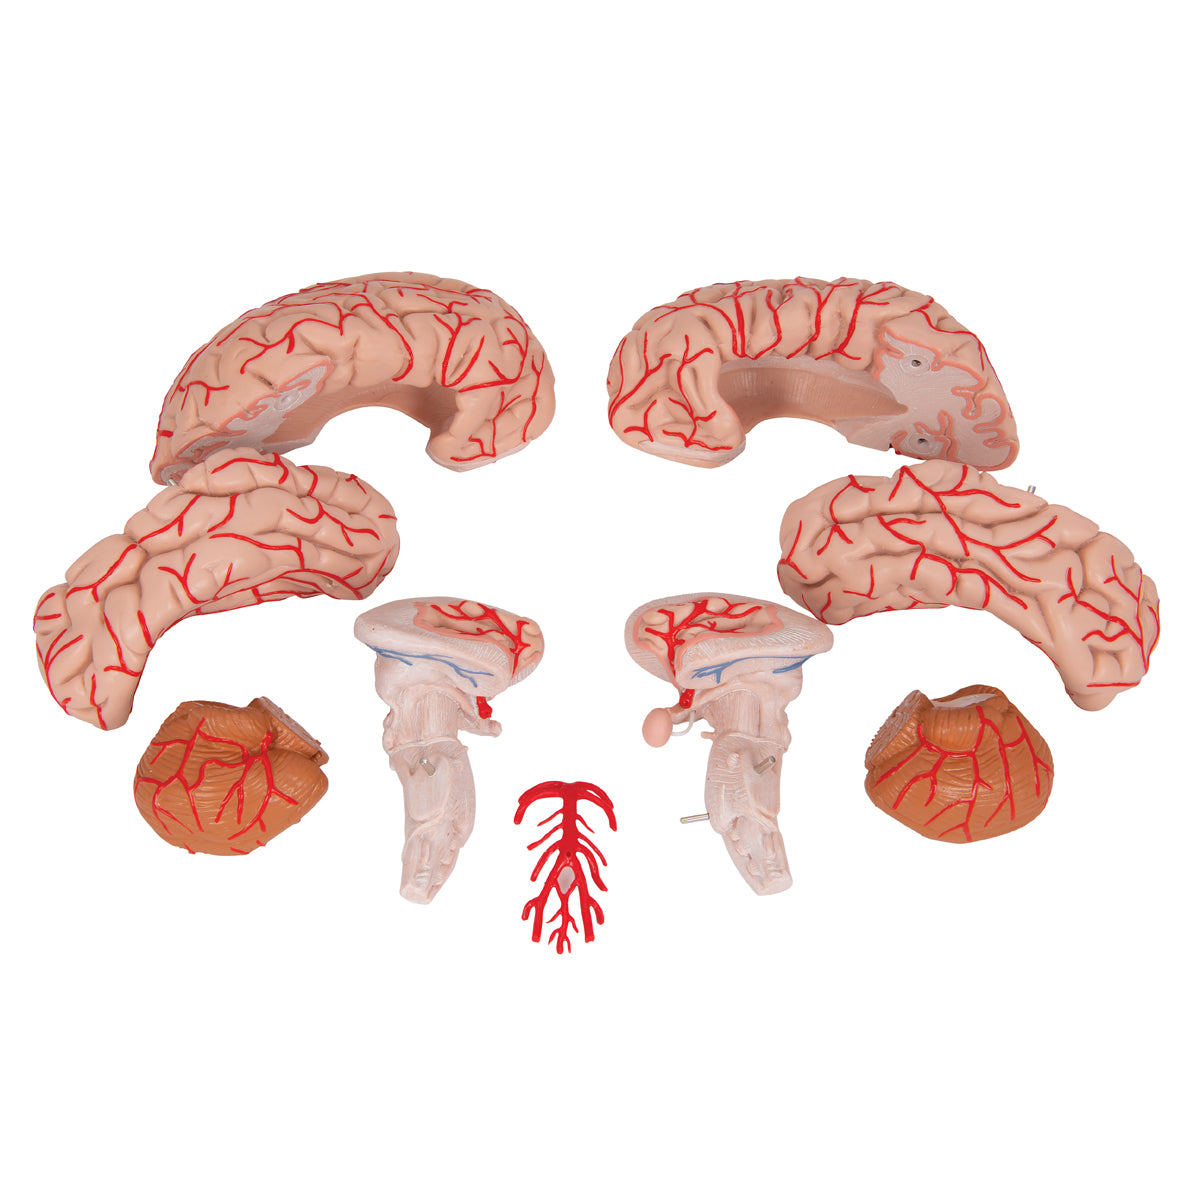 Hjernemodel der også viser arterier. Kan adskilles i 9 dele